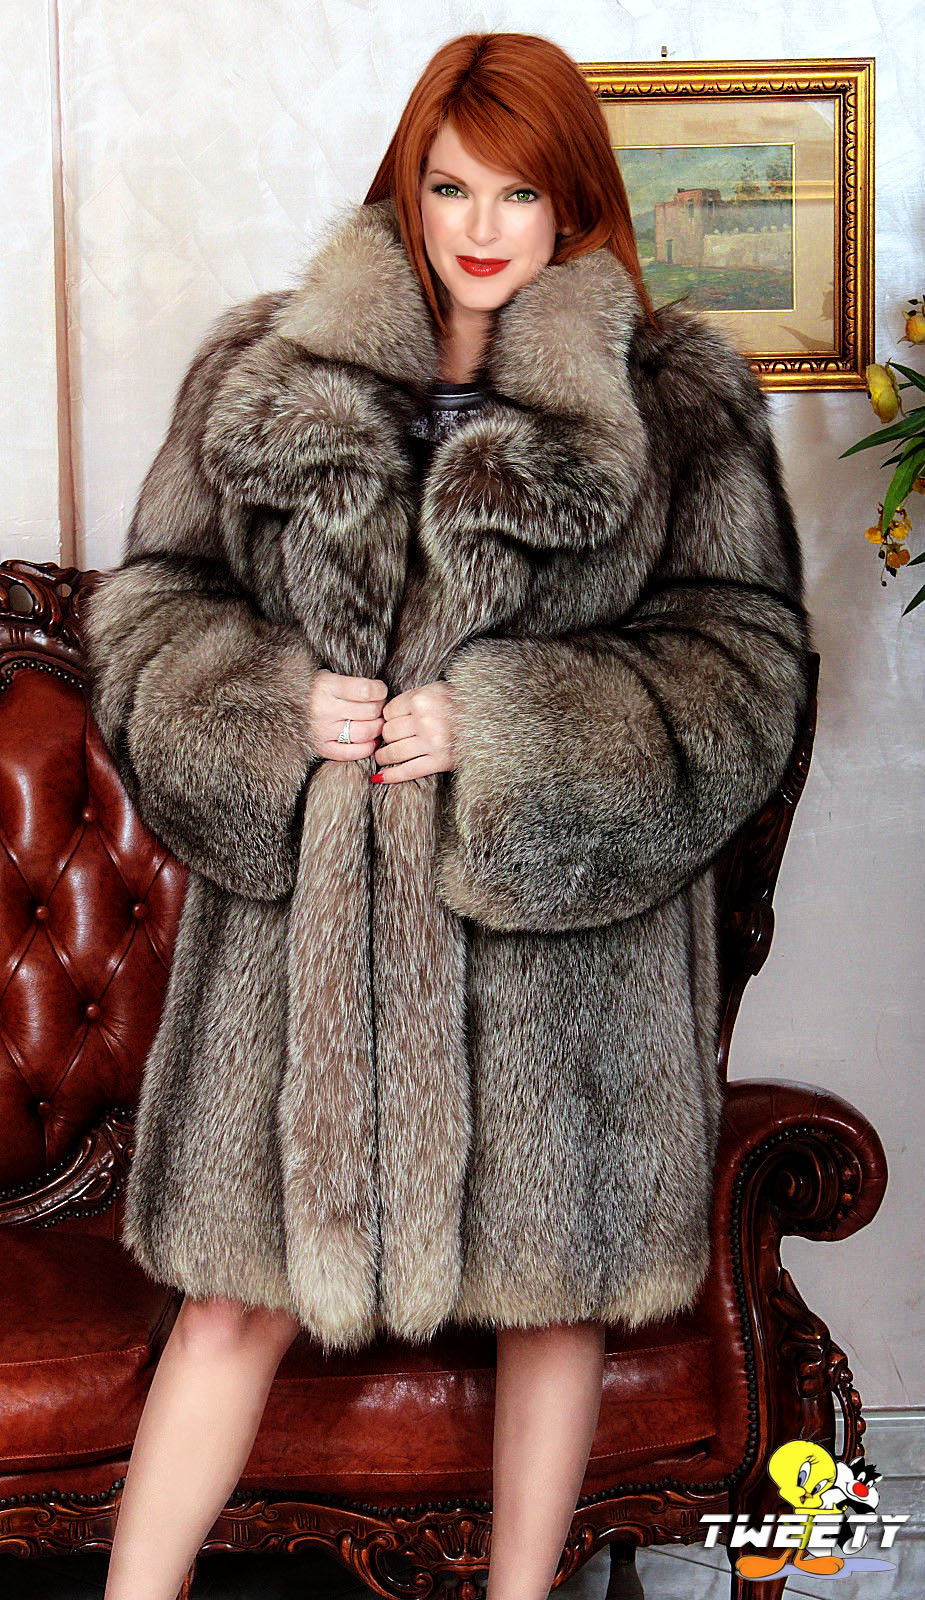 Marcia Cross in fox fur coat by Tweety63 on DeviantArt